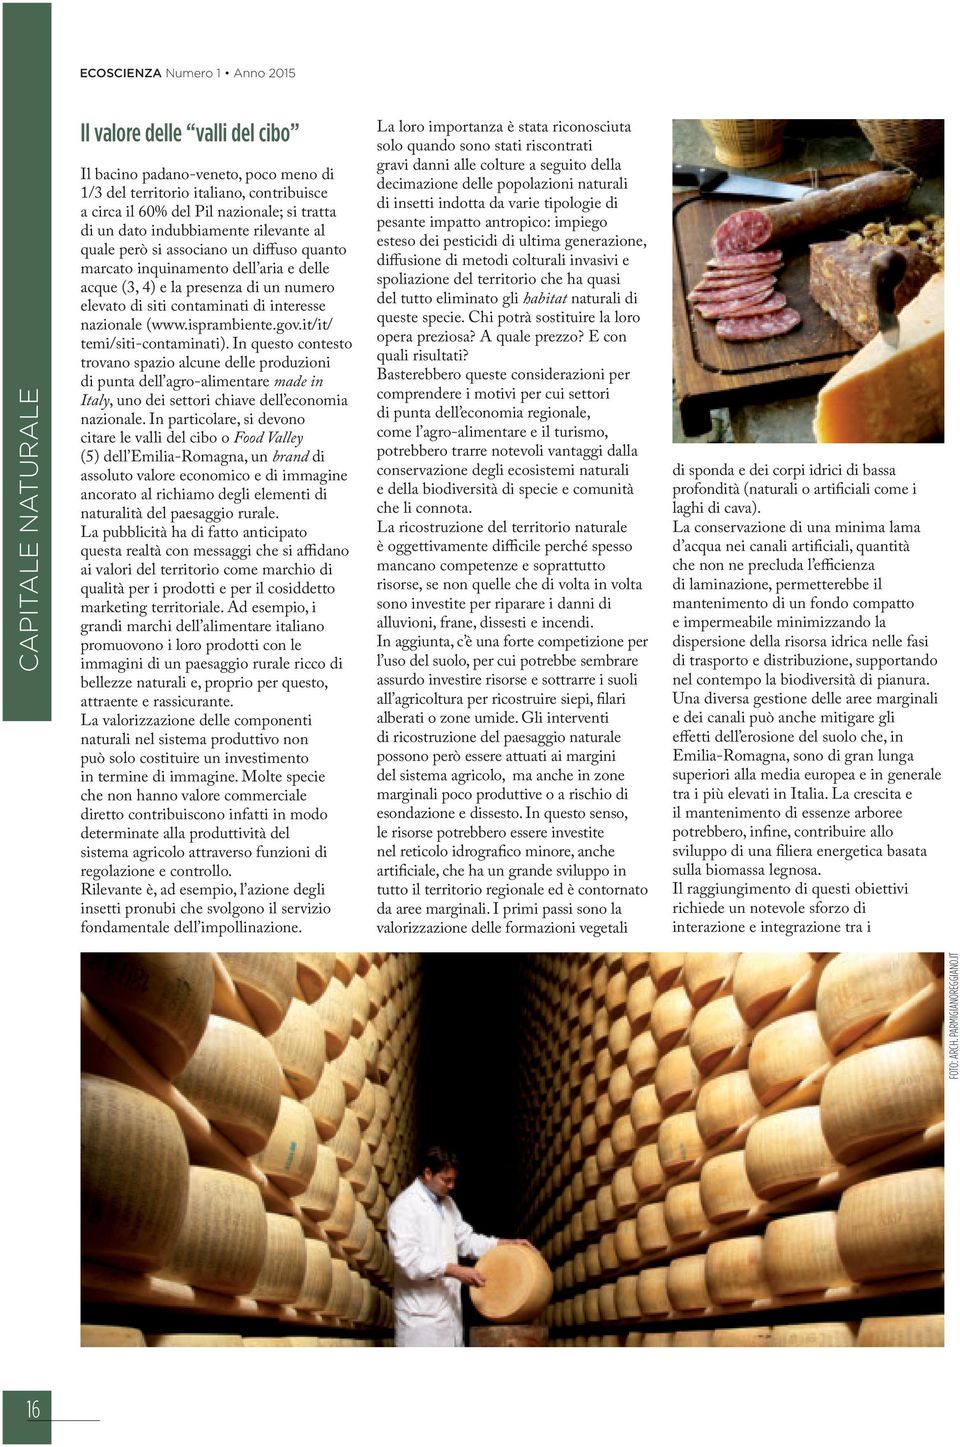 isprambiente.gov.it/it/ temi/siti-contaminati). In questo contesto trovano spazio alcune delle produzioni di punta dell agro-alimentare made in Italy, uno dei settori chiave dell economia nazionale.